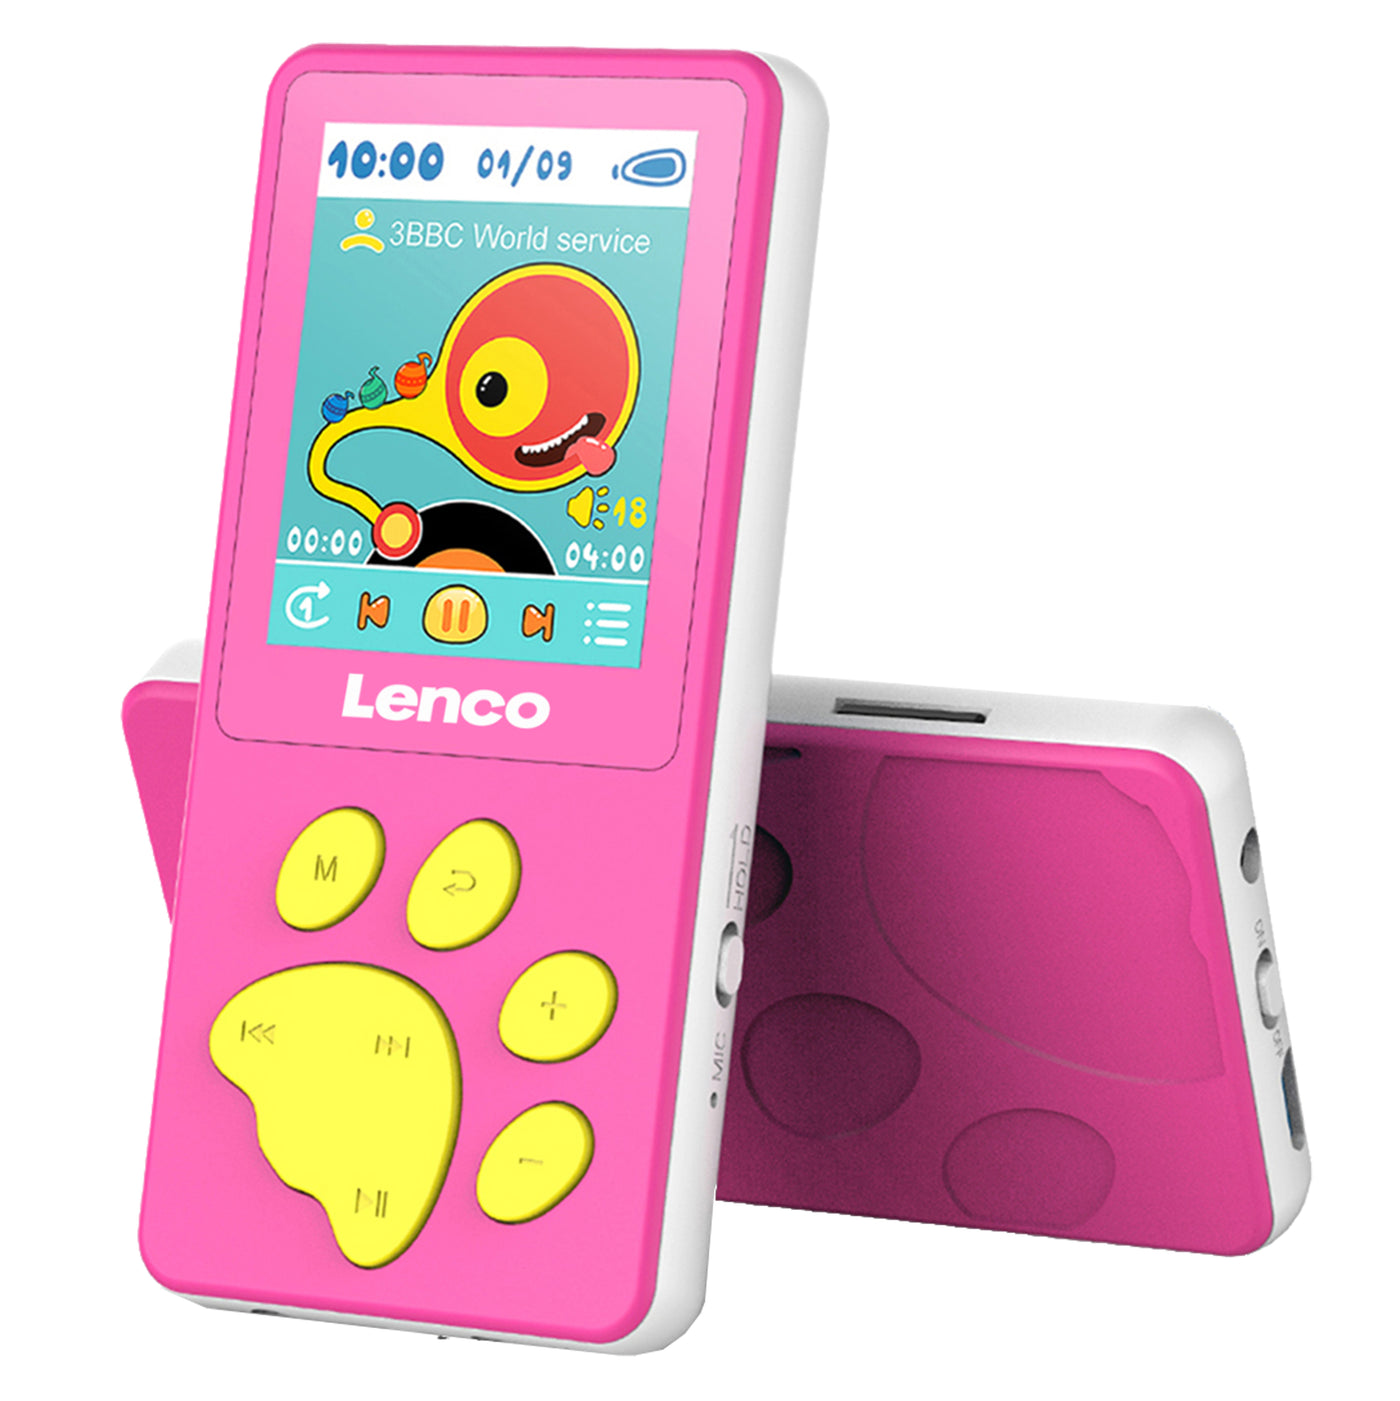 LENCO Xemio-560PK - Odtwarzacz MP3/MP4 z pamięcią 8GB - Różowy